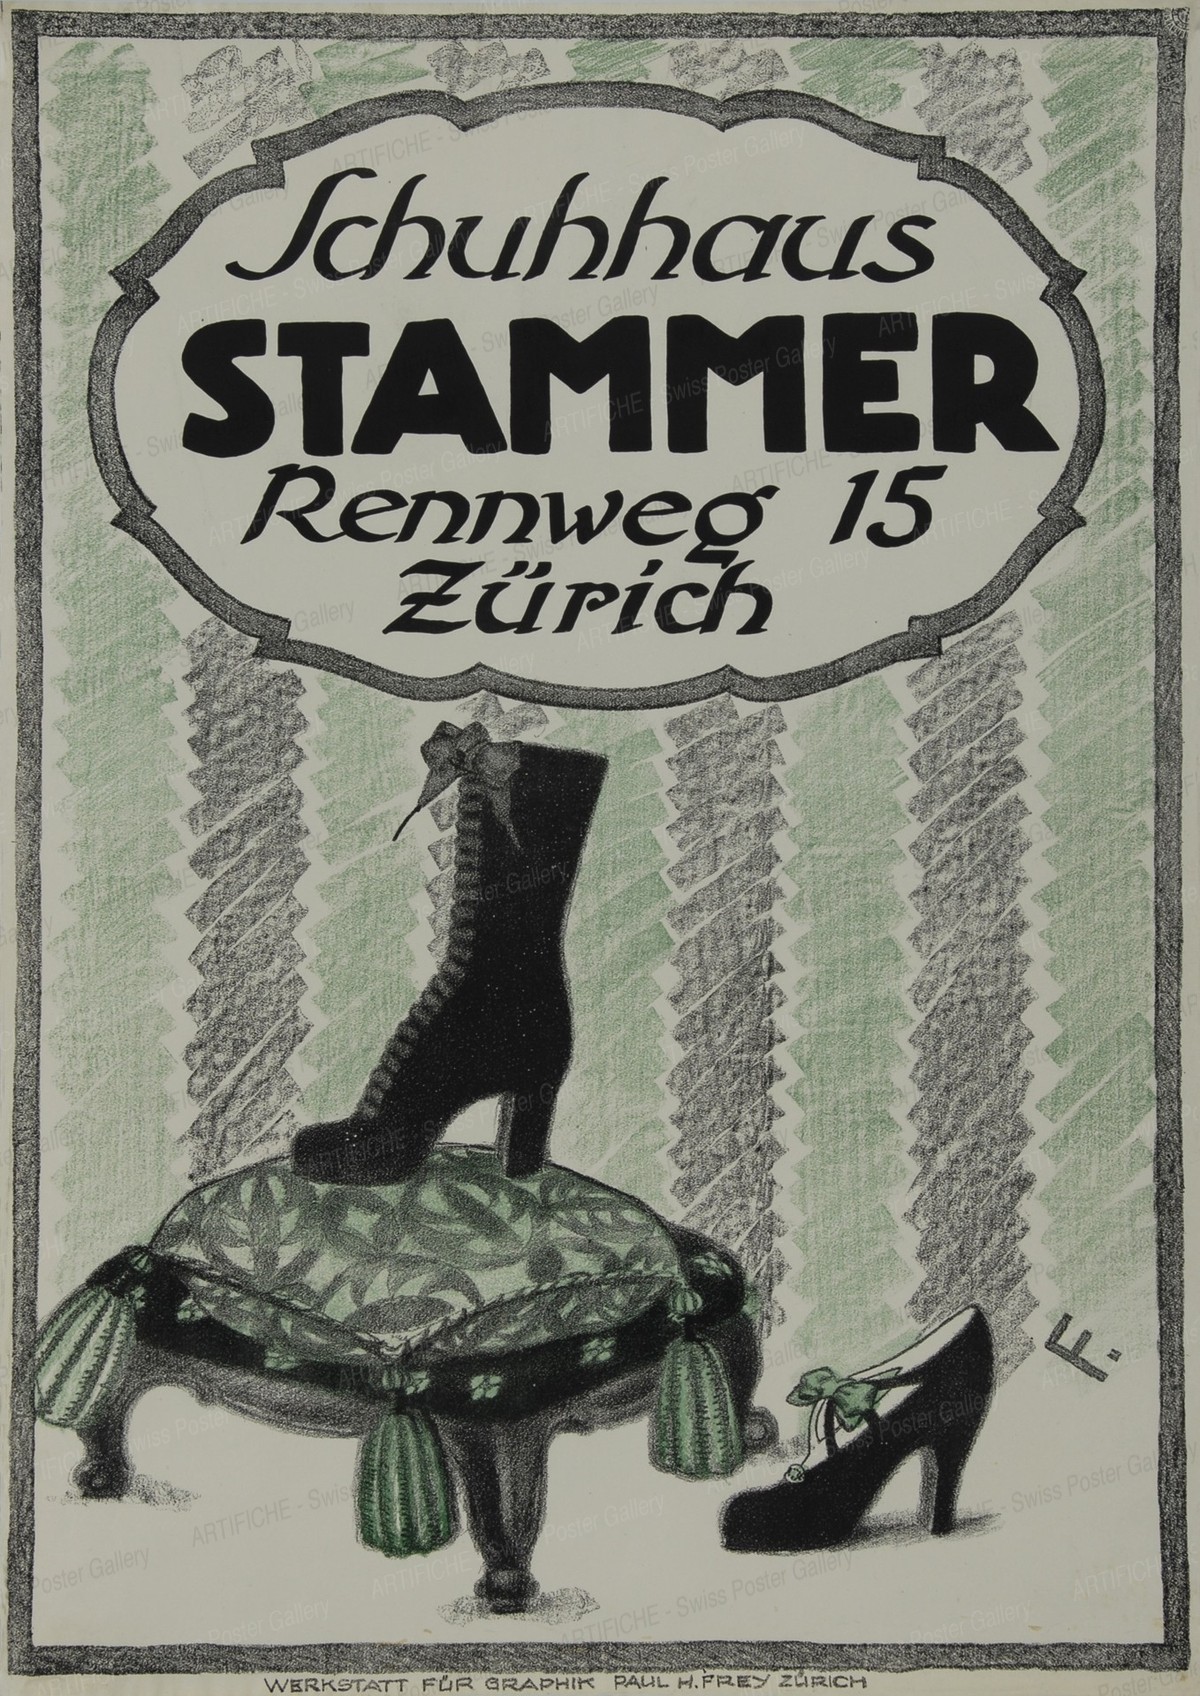 Stammer Shoes Zurich, Paul H. Frey